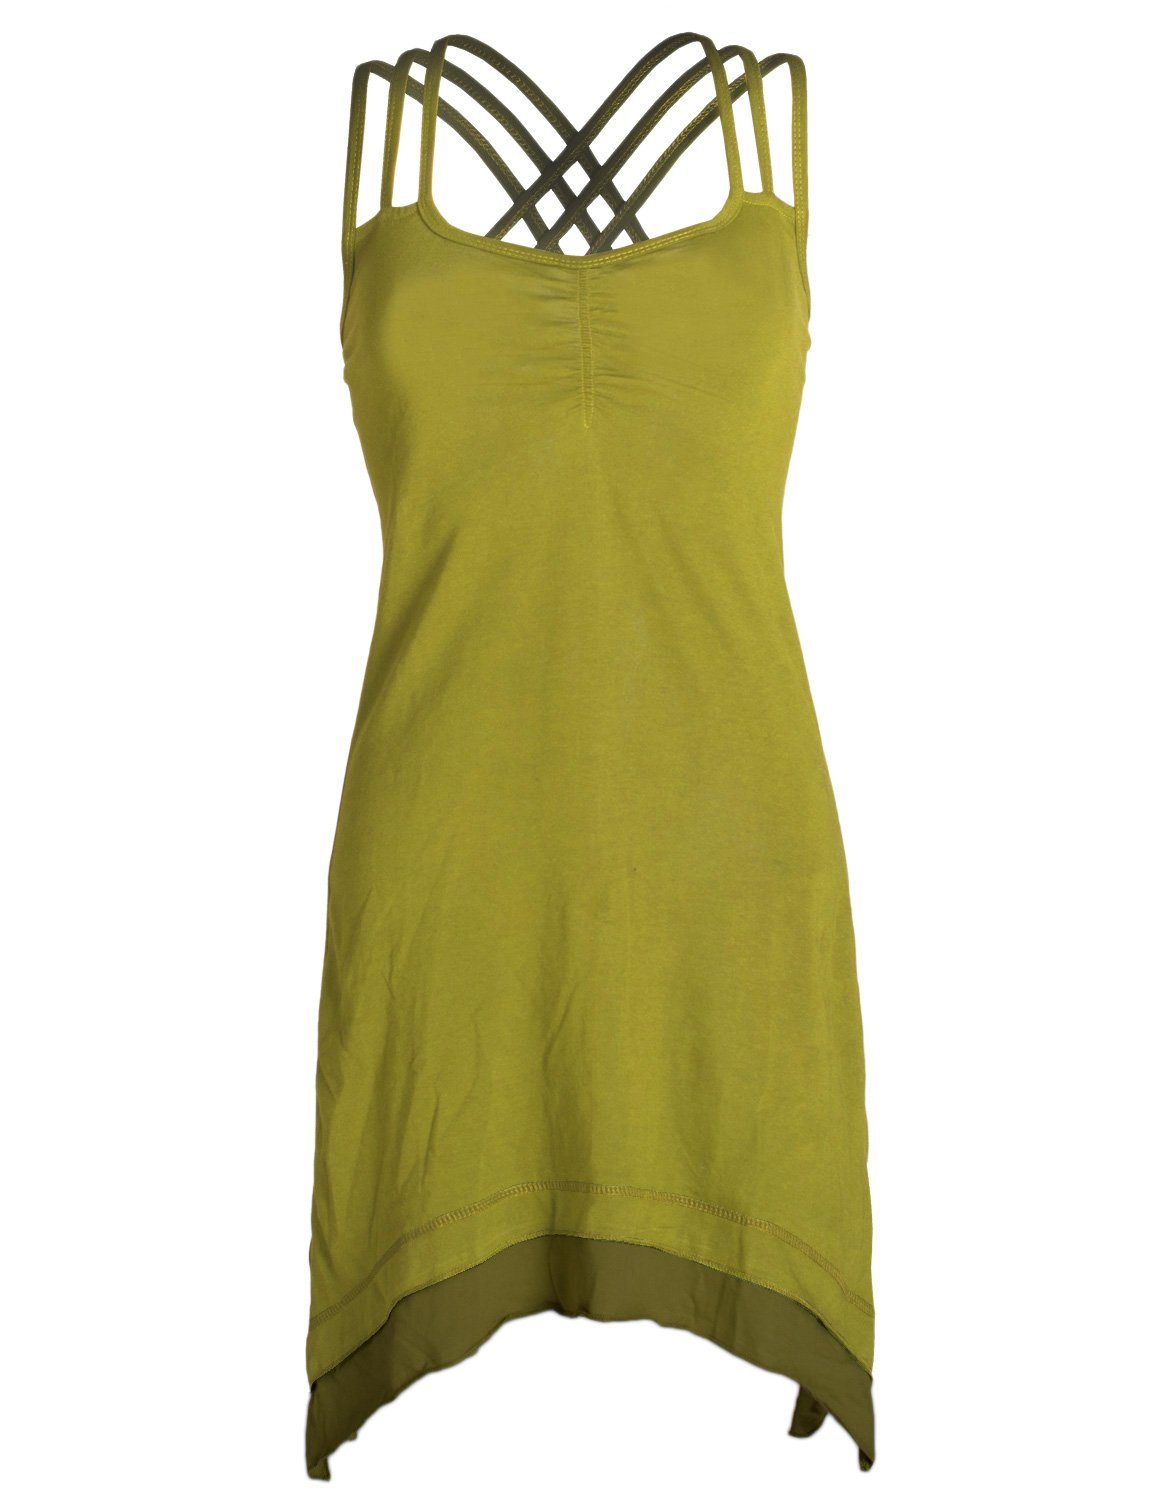 Vishes Sommerkleid Lagenlook Style Boho hellgrün Cotton Hippie, Zipfeln Trägerkleid Elfen, Organic mit